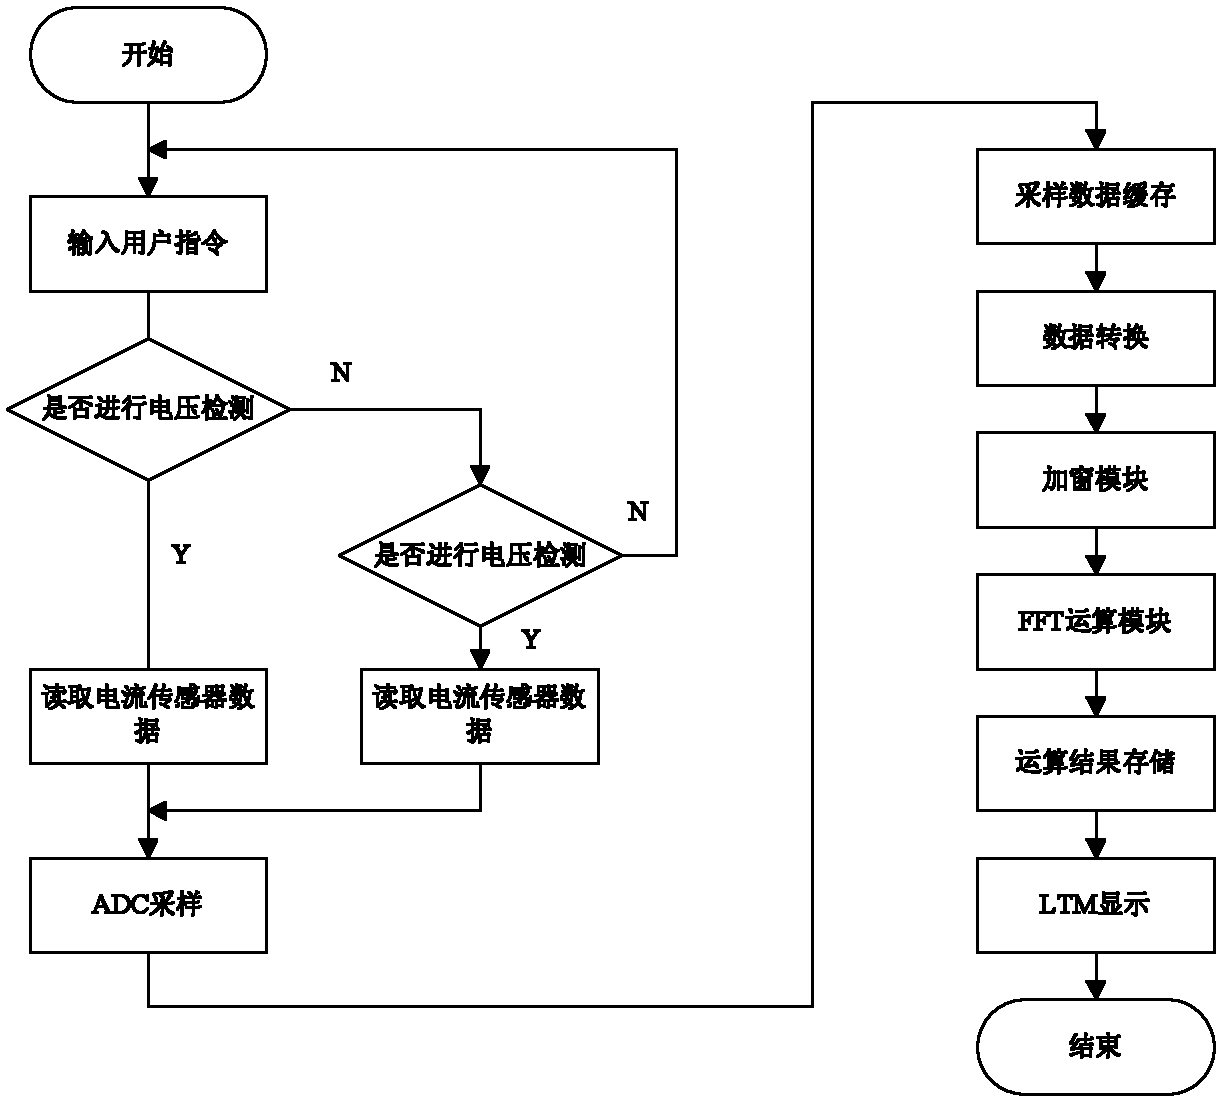 A power harmonic analyzer based on fpga